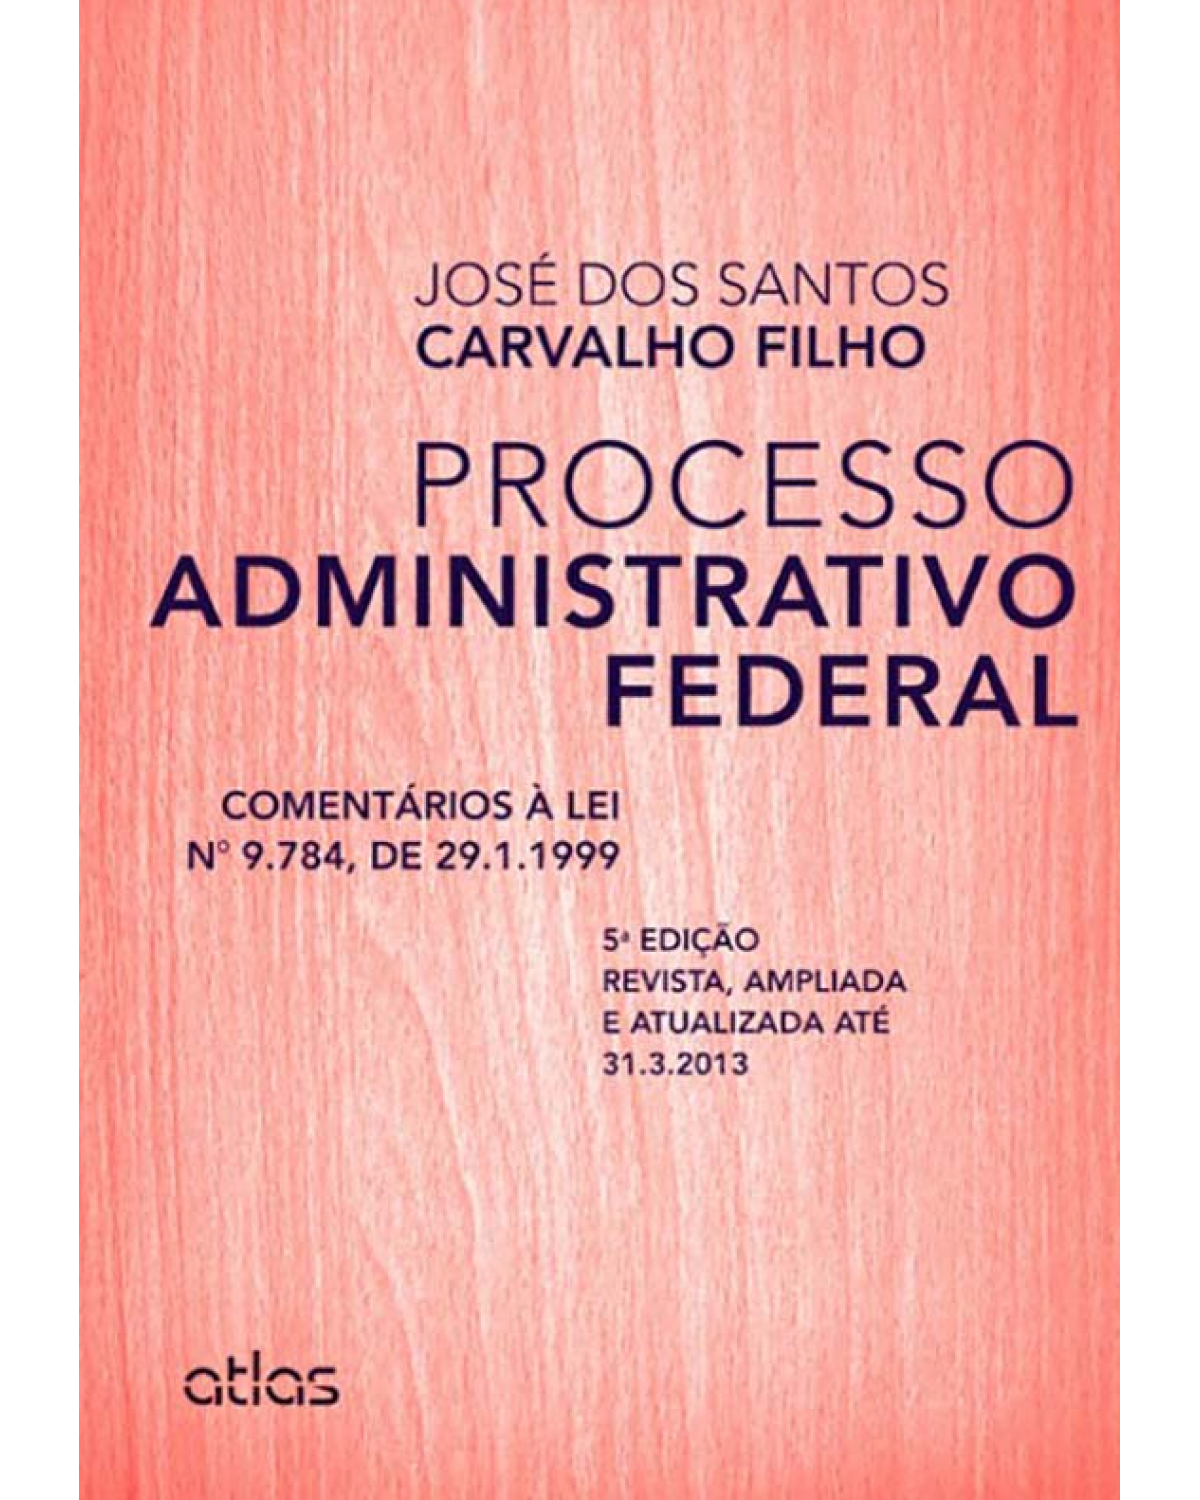 Processo administrativo federal - Comentários à lei 9.784, de 29.1.1999 - 5ª Edição | 2013